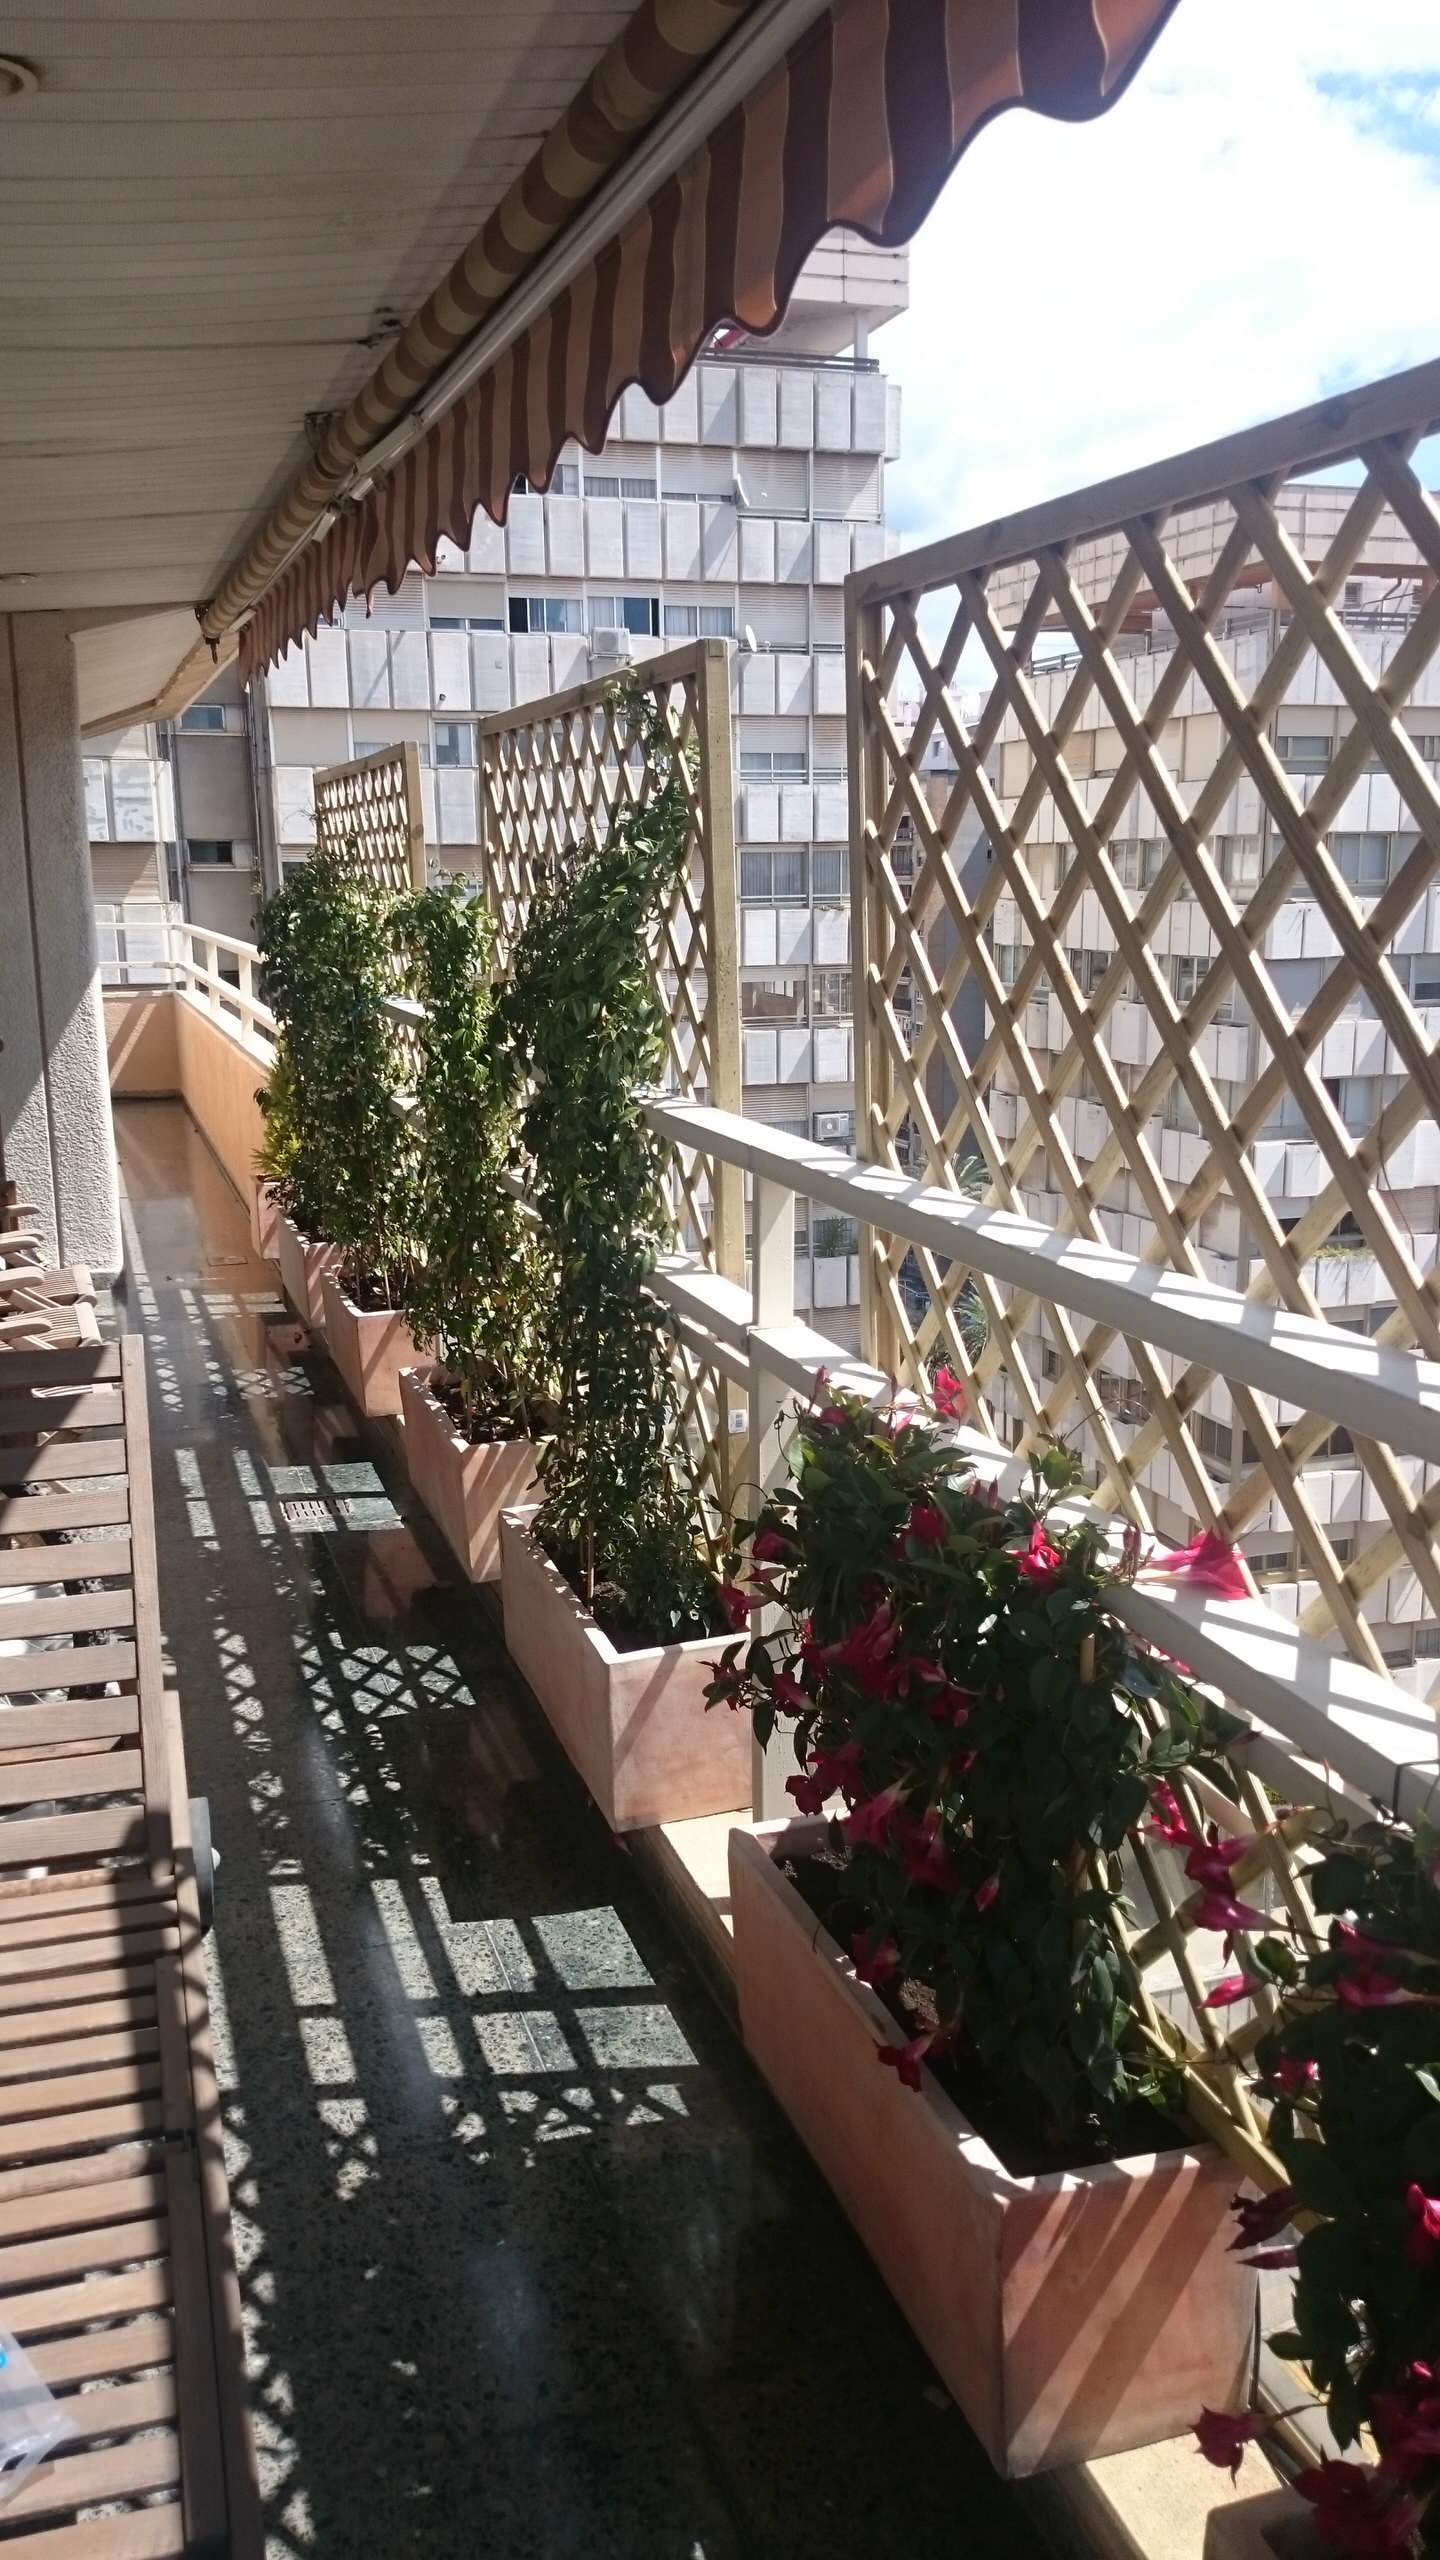 Живите проще: 23 лайфхака для крошечного балкона